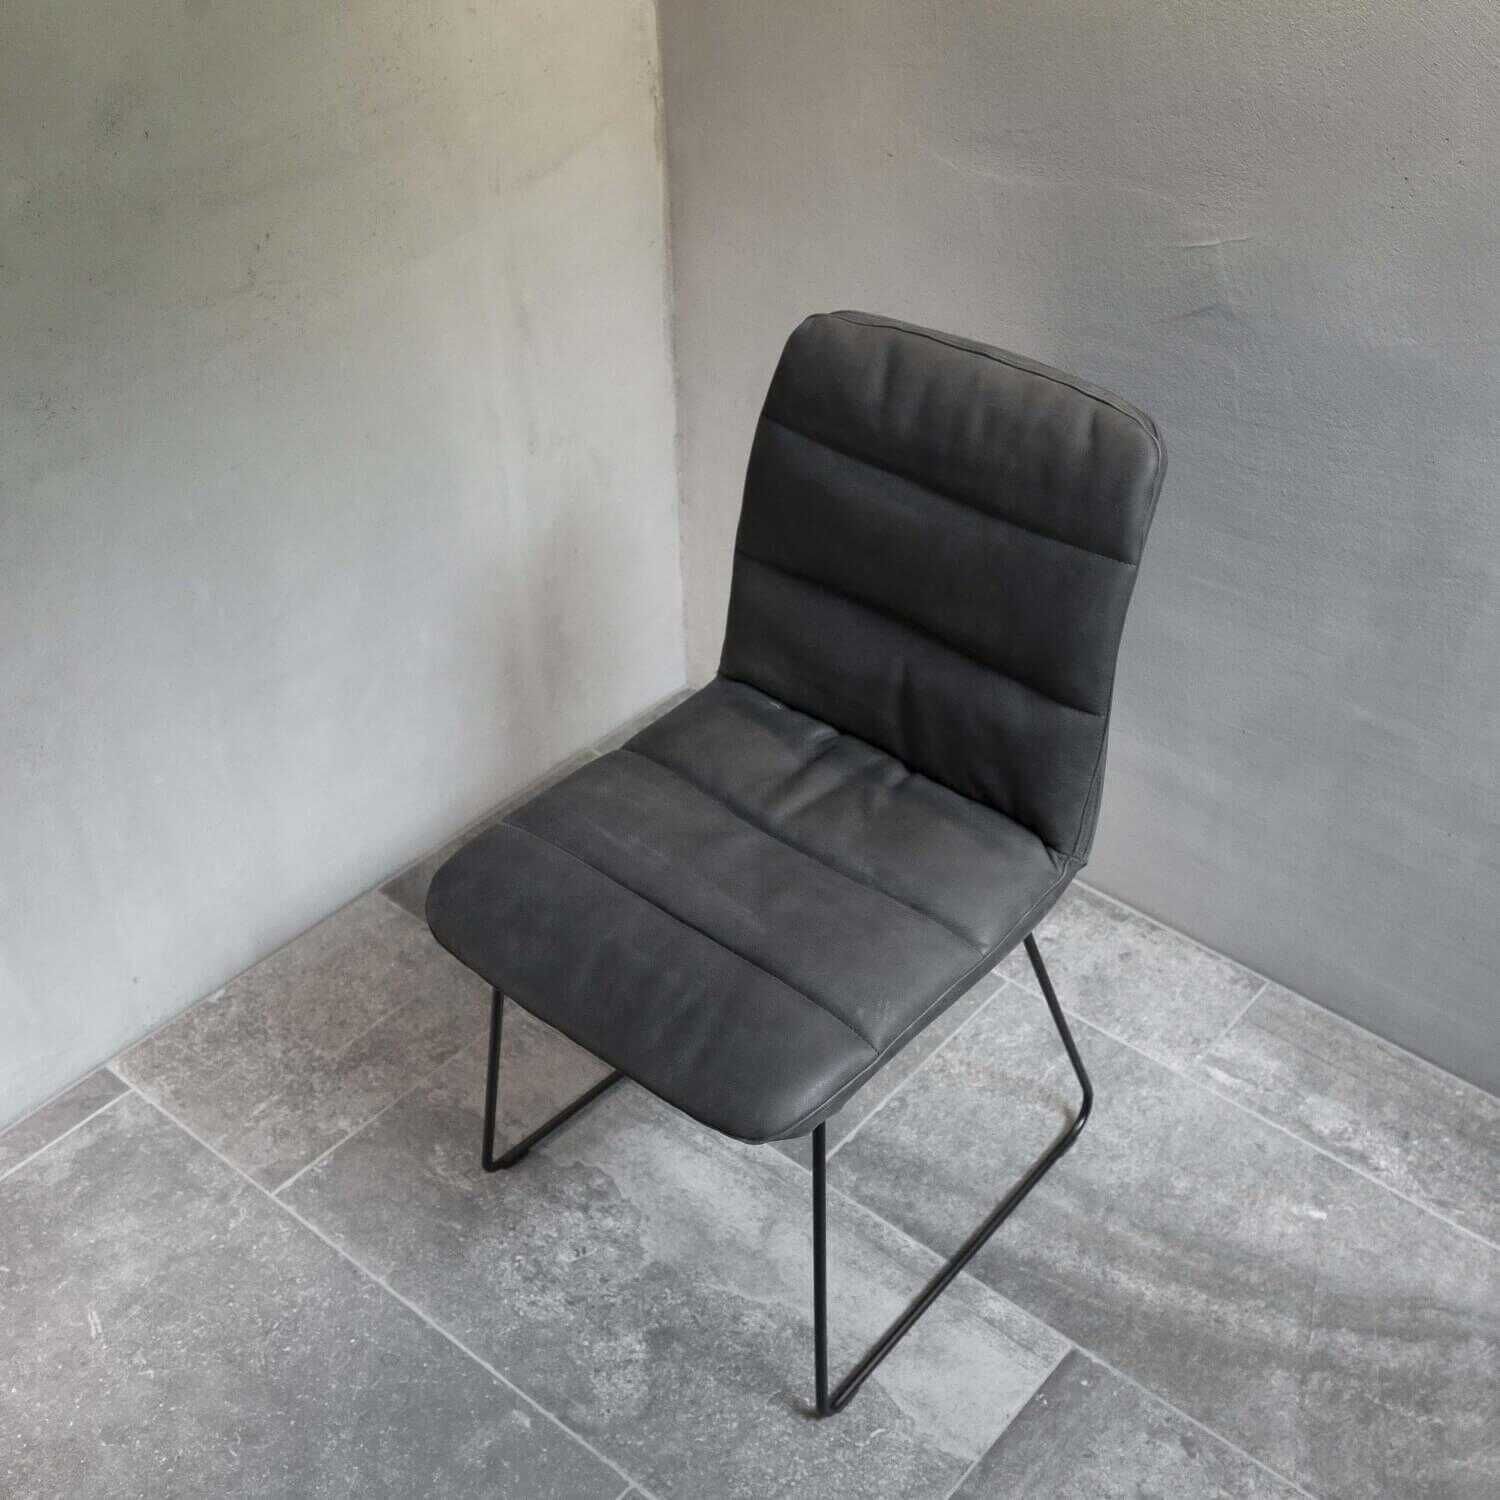 4er-Set Stuhl Basic 2 Chair Mod. 926.91 Leder Dunkelbraun Gestell Schwarz